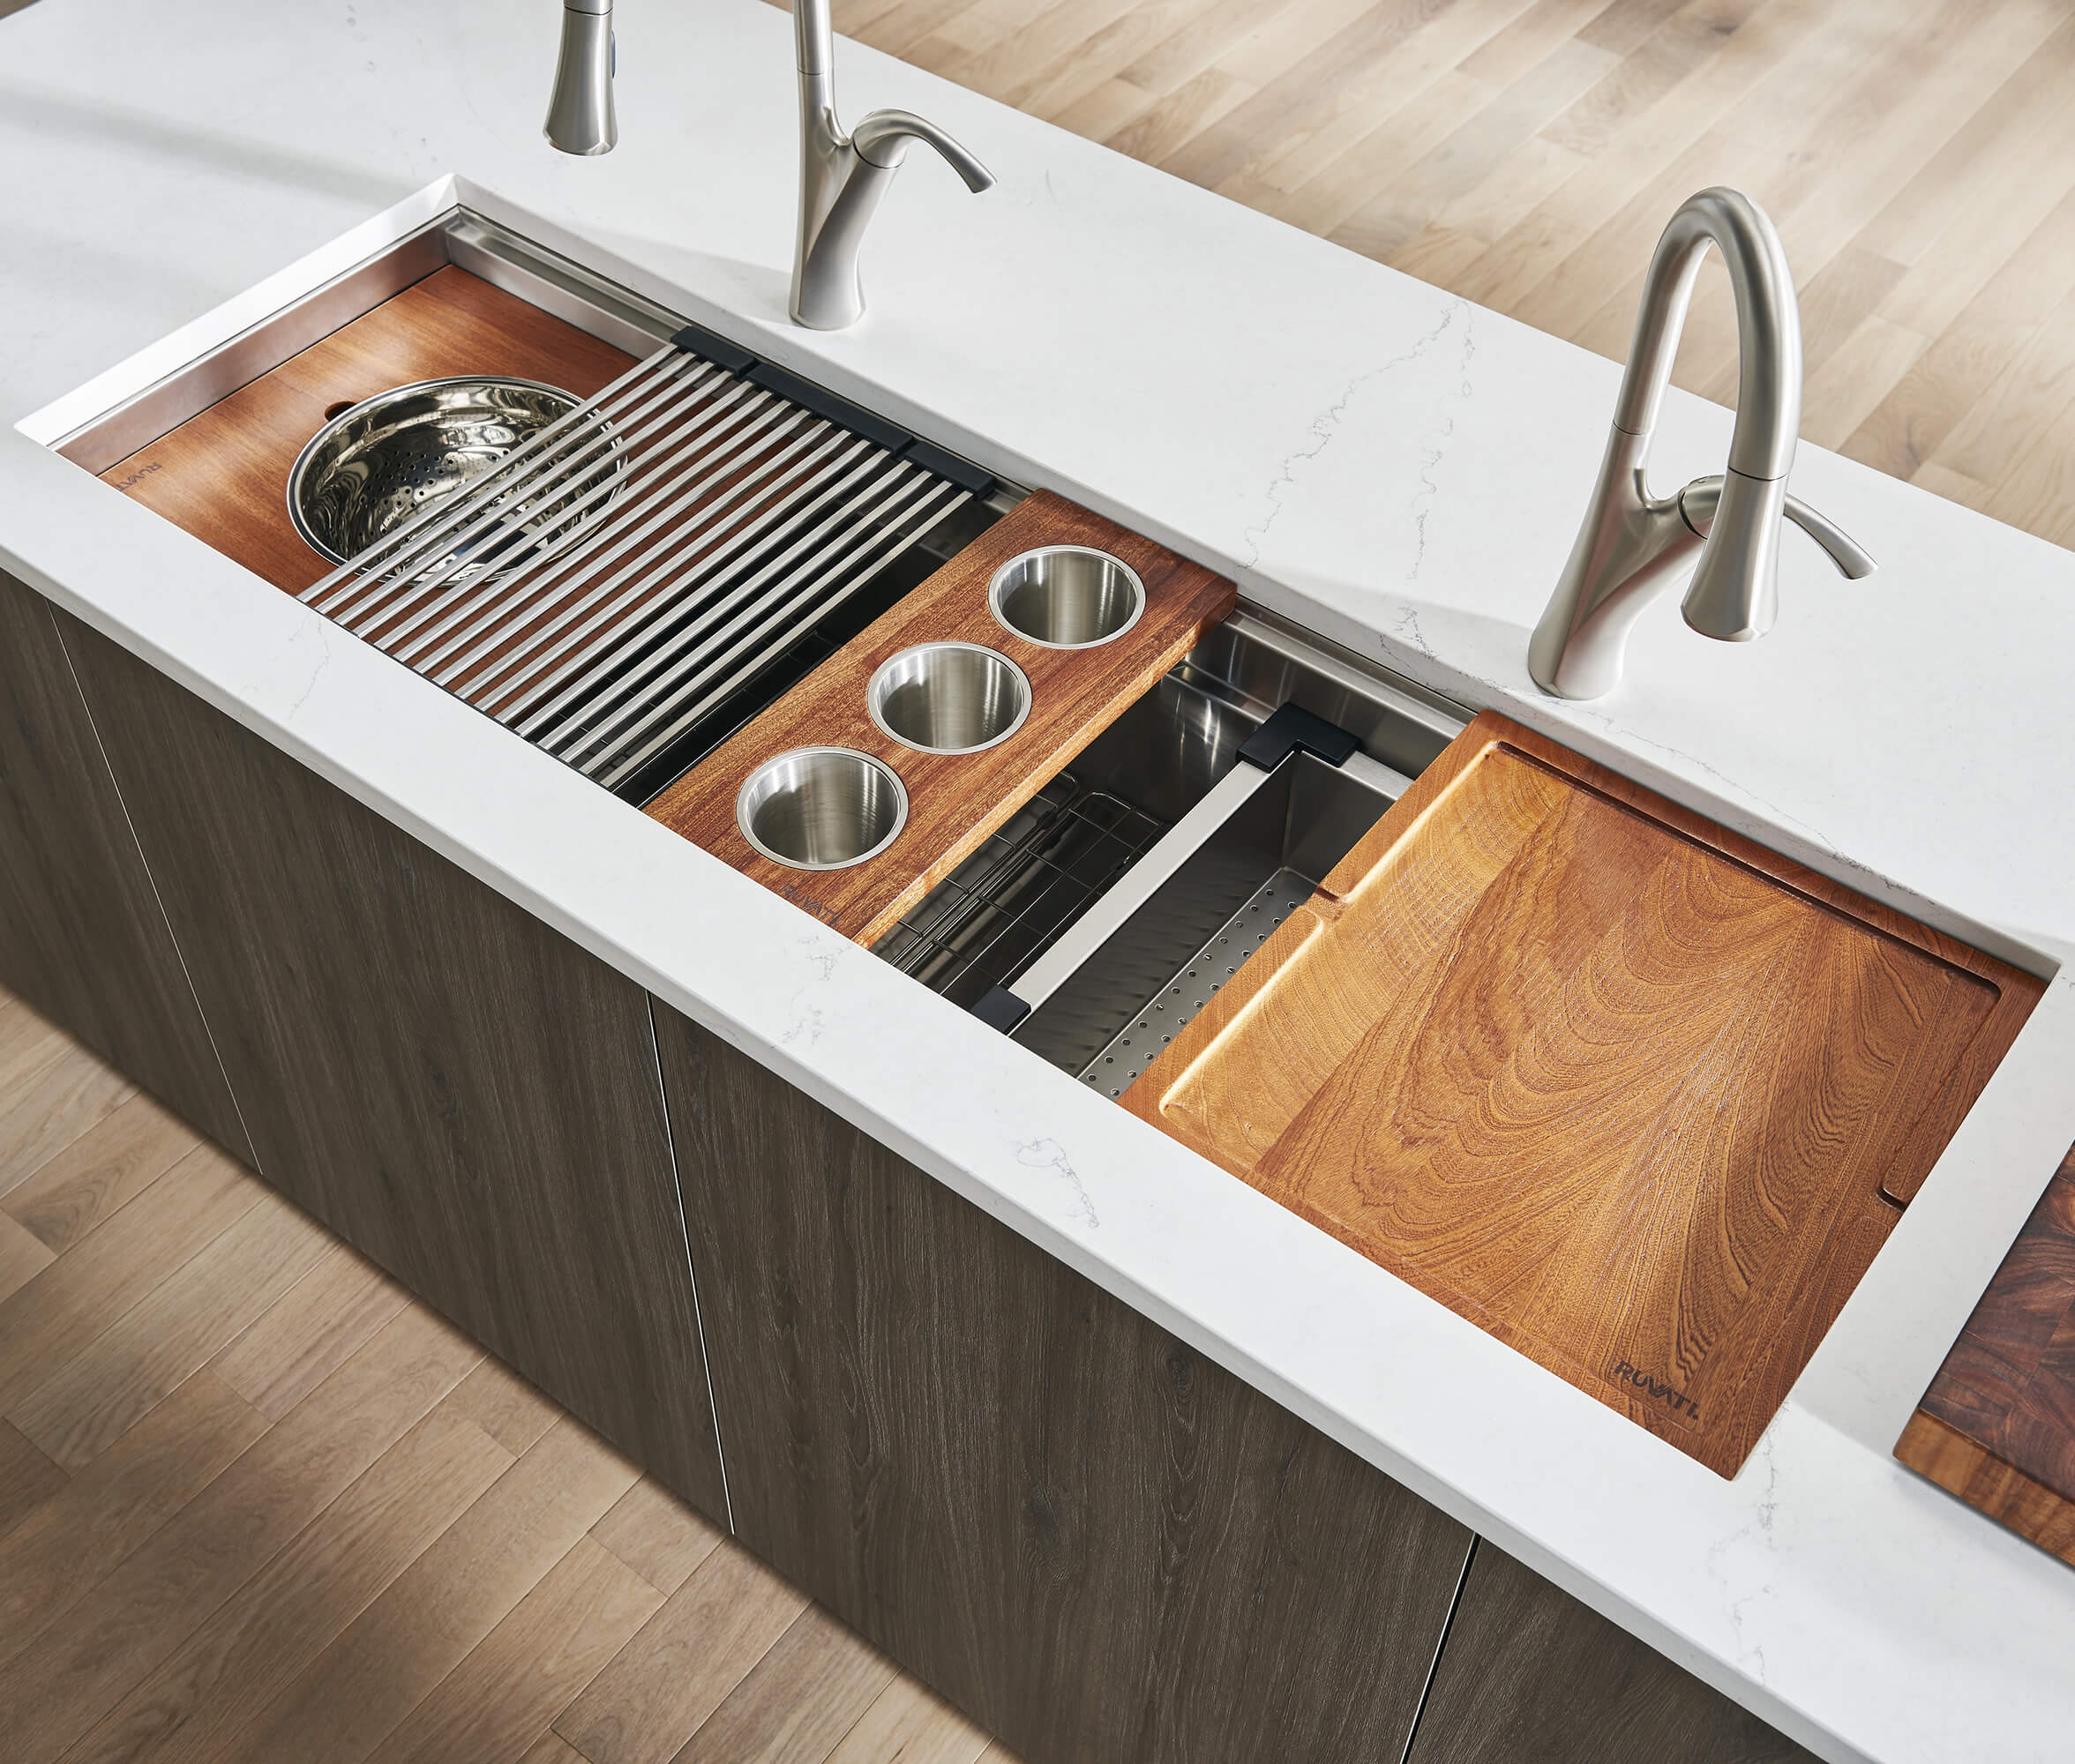 57-inch Workstation Two-Tiered Ledge Kitchen Sink Undermount 16 Gauge